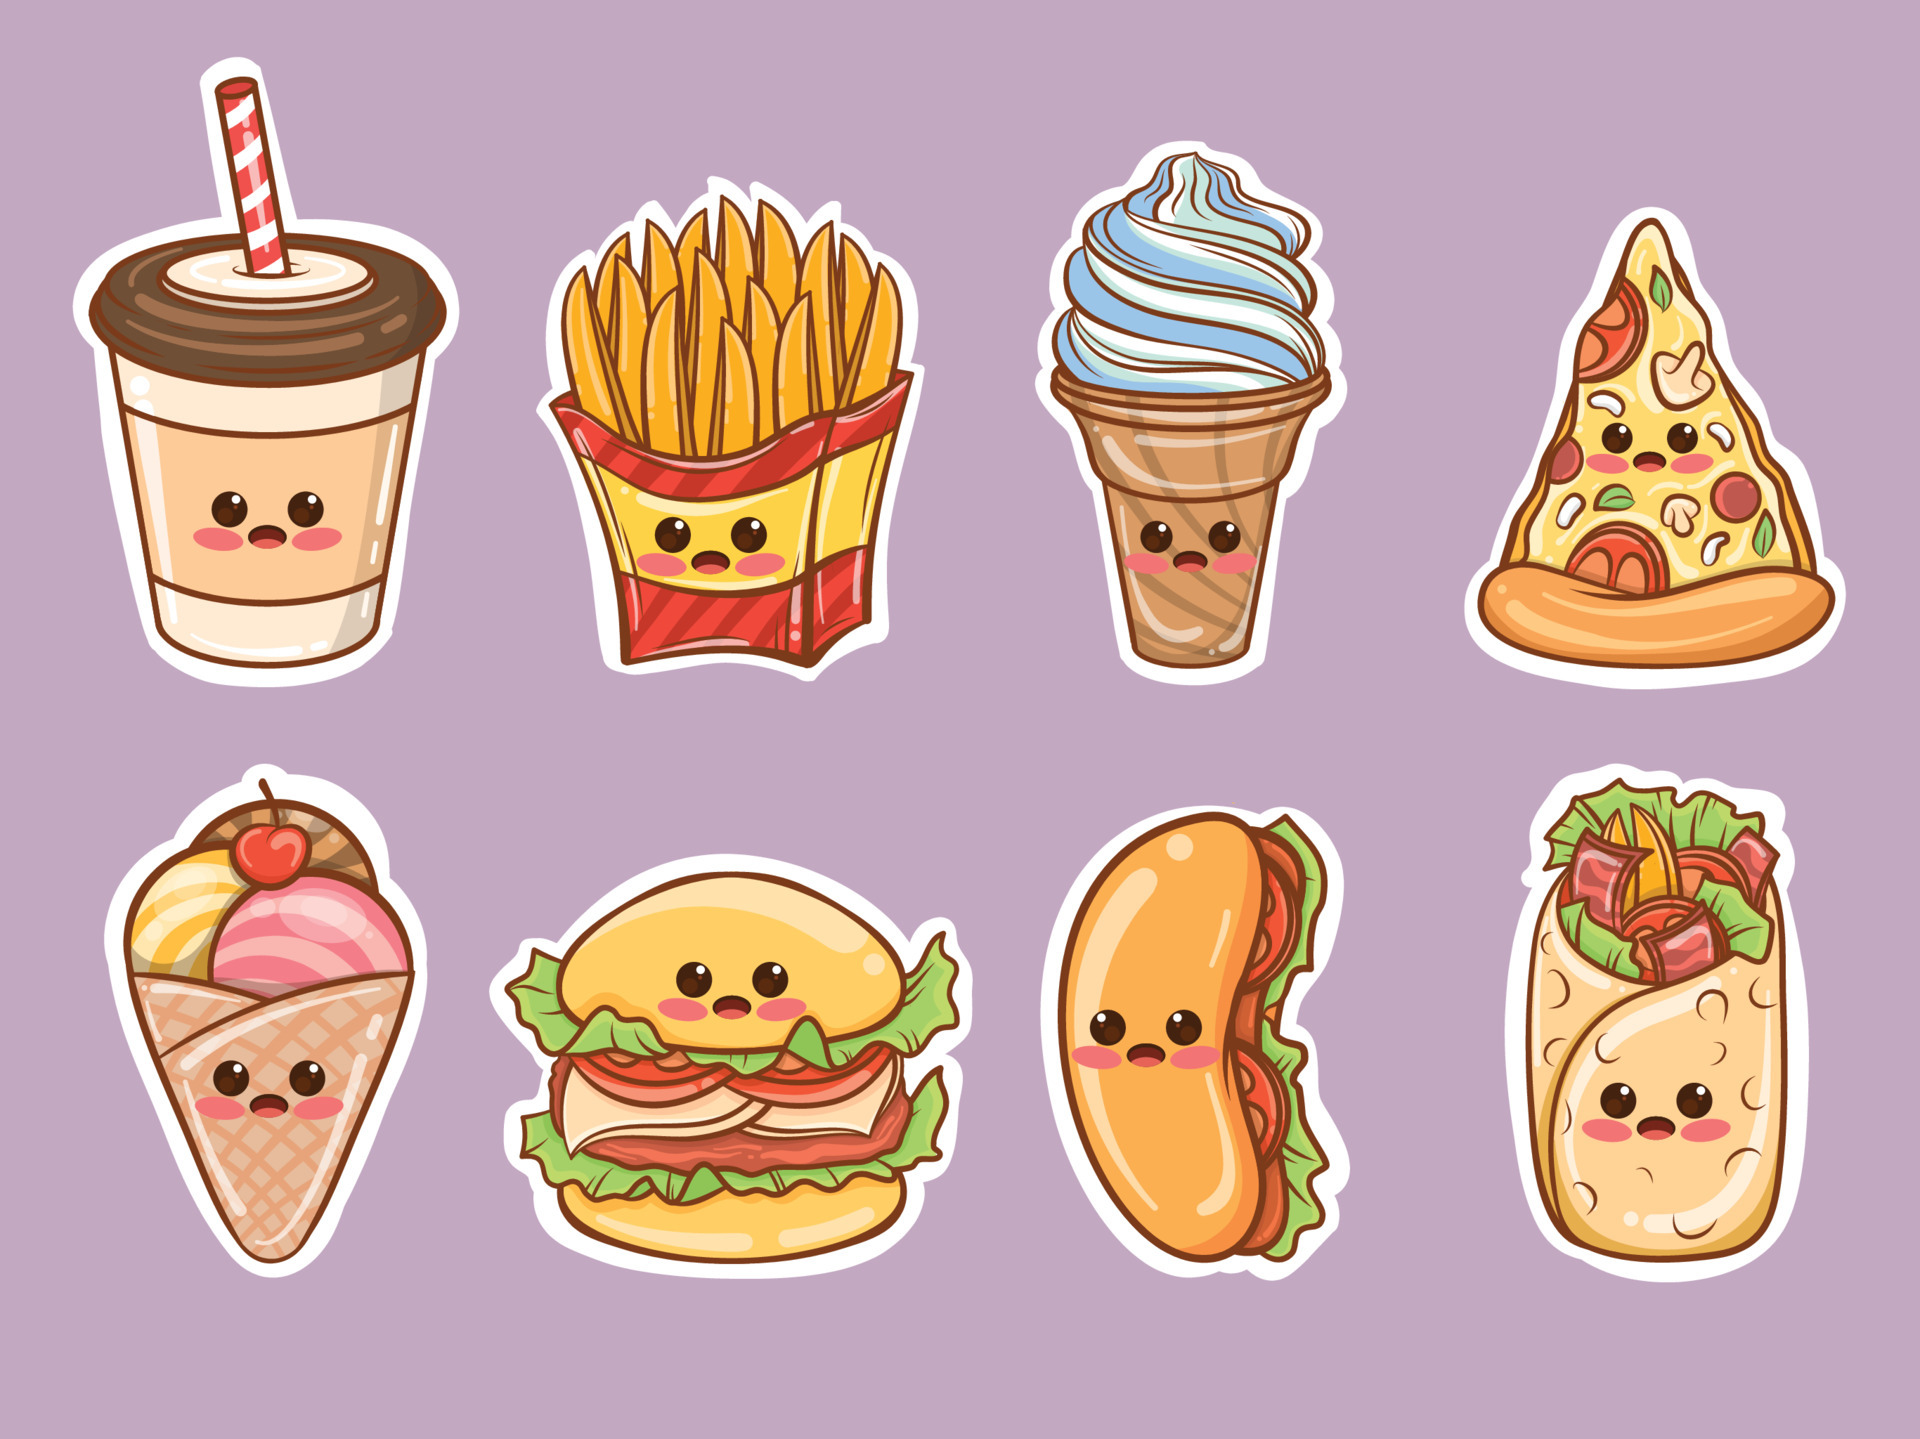 Tổng Hợp] Những Hình Vẽ Sticker Về Đồ Ăn Dễ Thương Cute